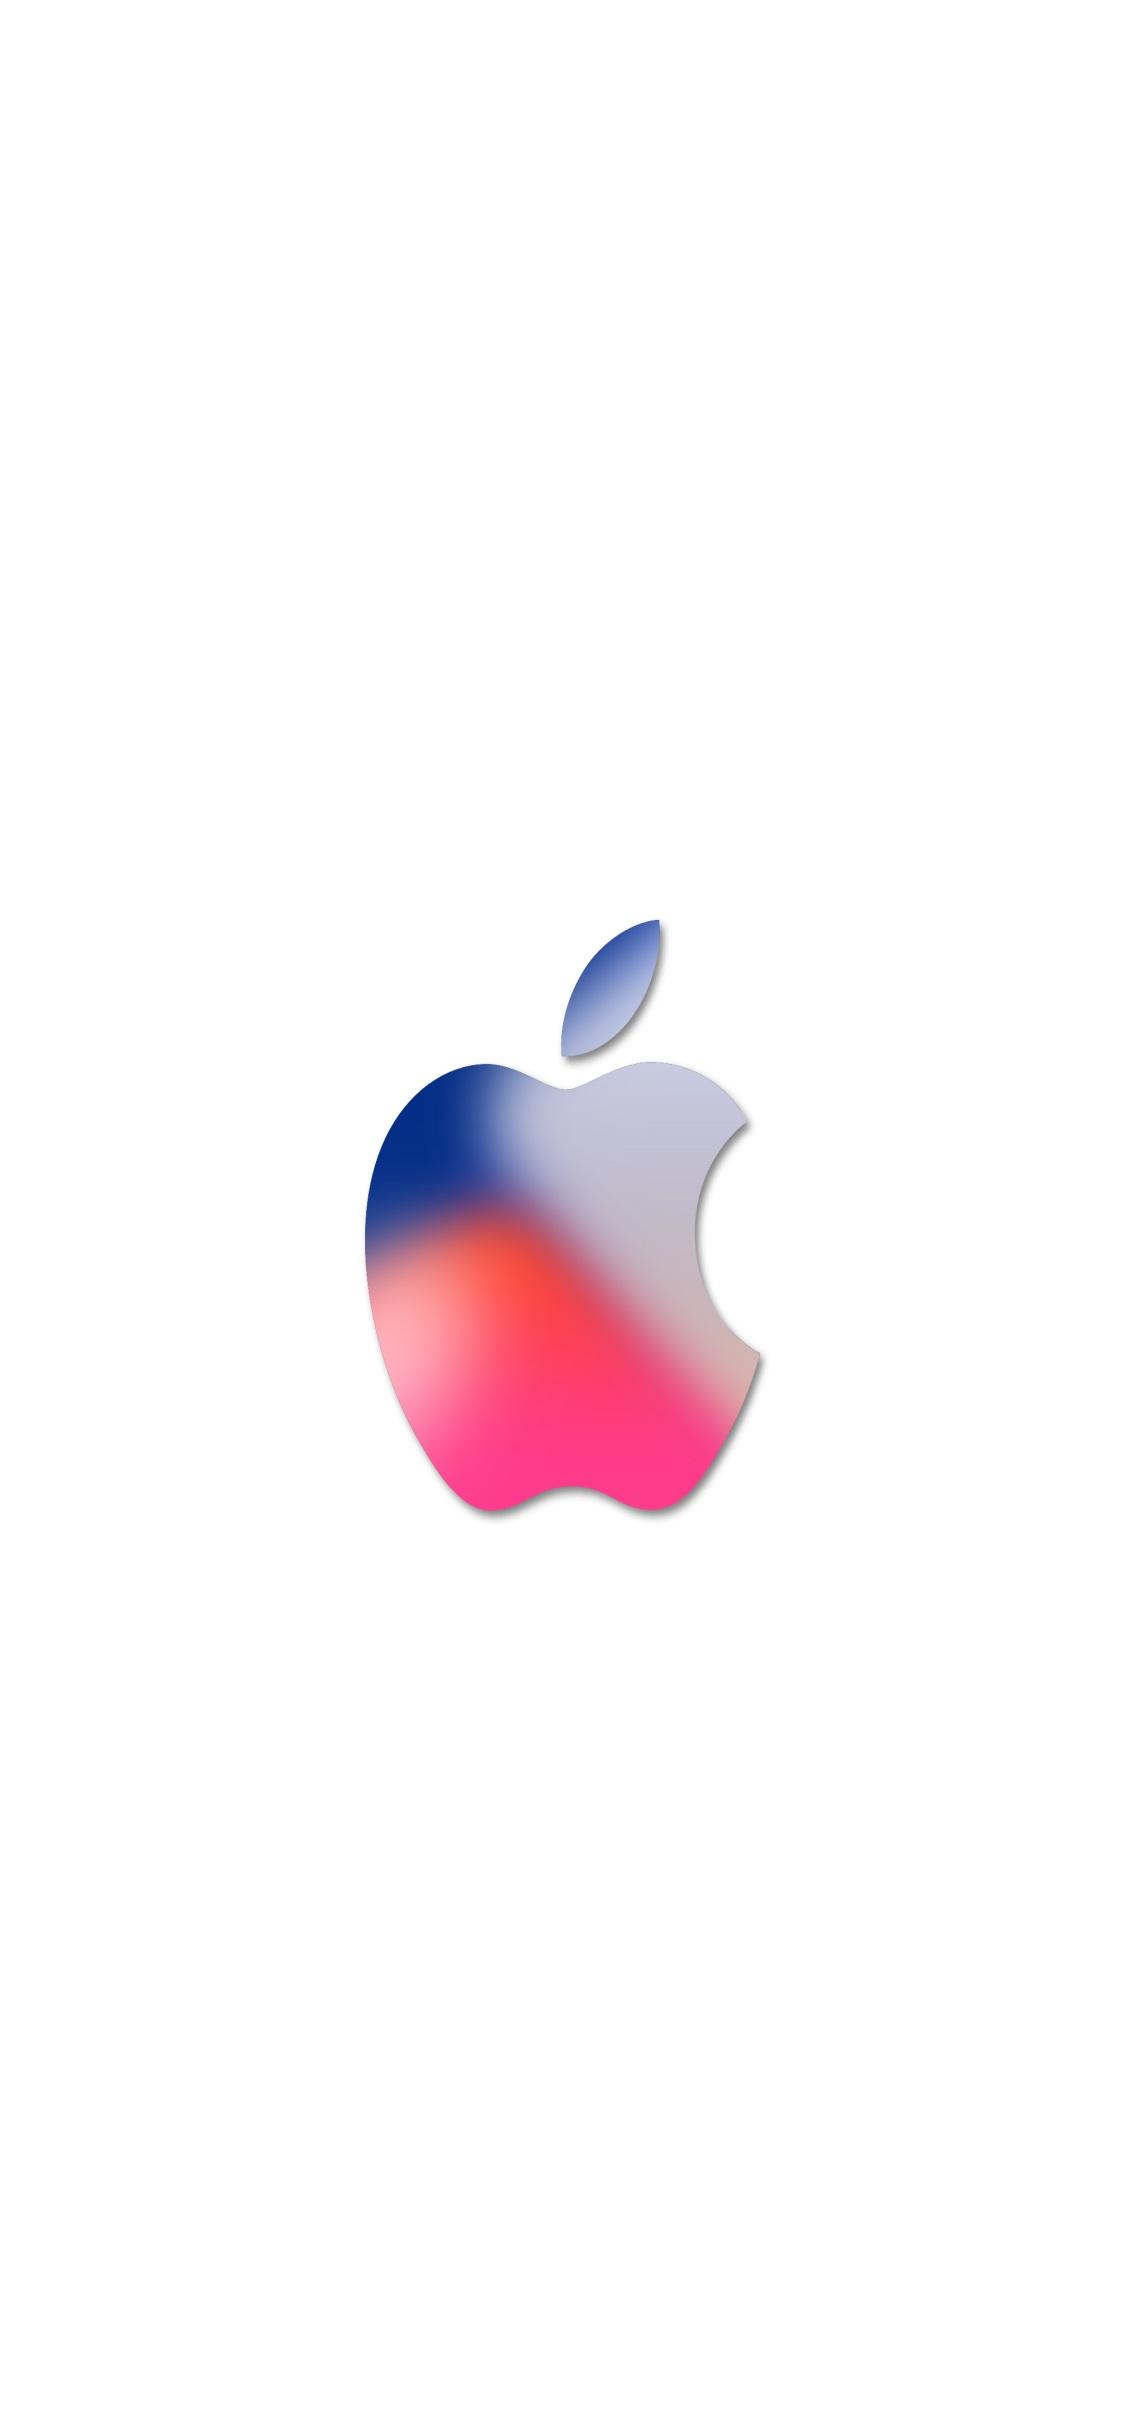 Apple Logo Wallpaper For iPhone Apple Logo Wallpaper